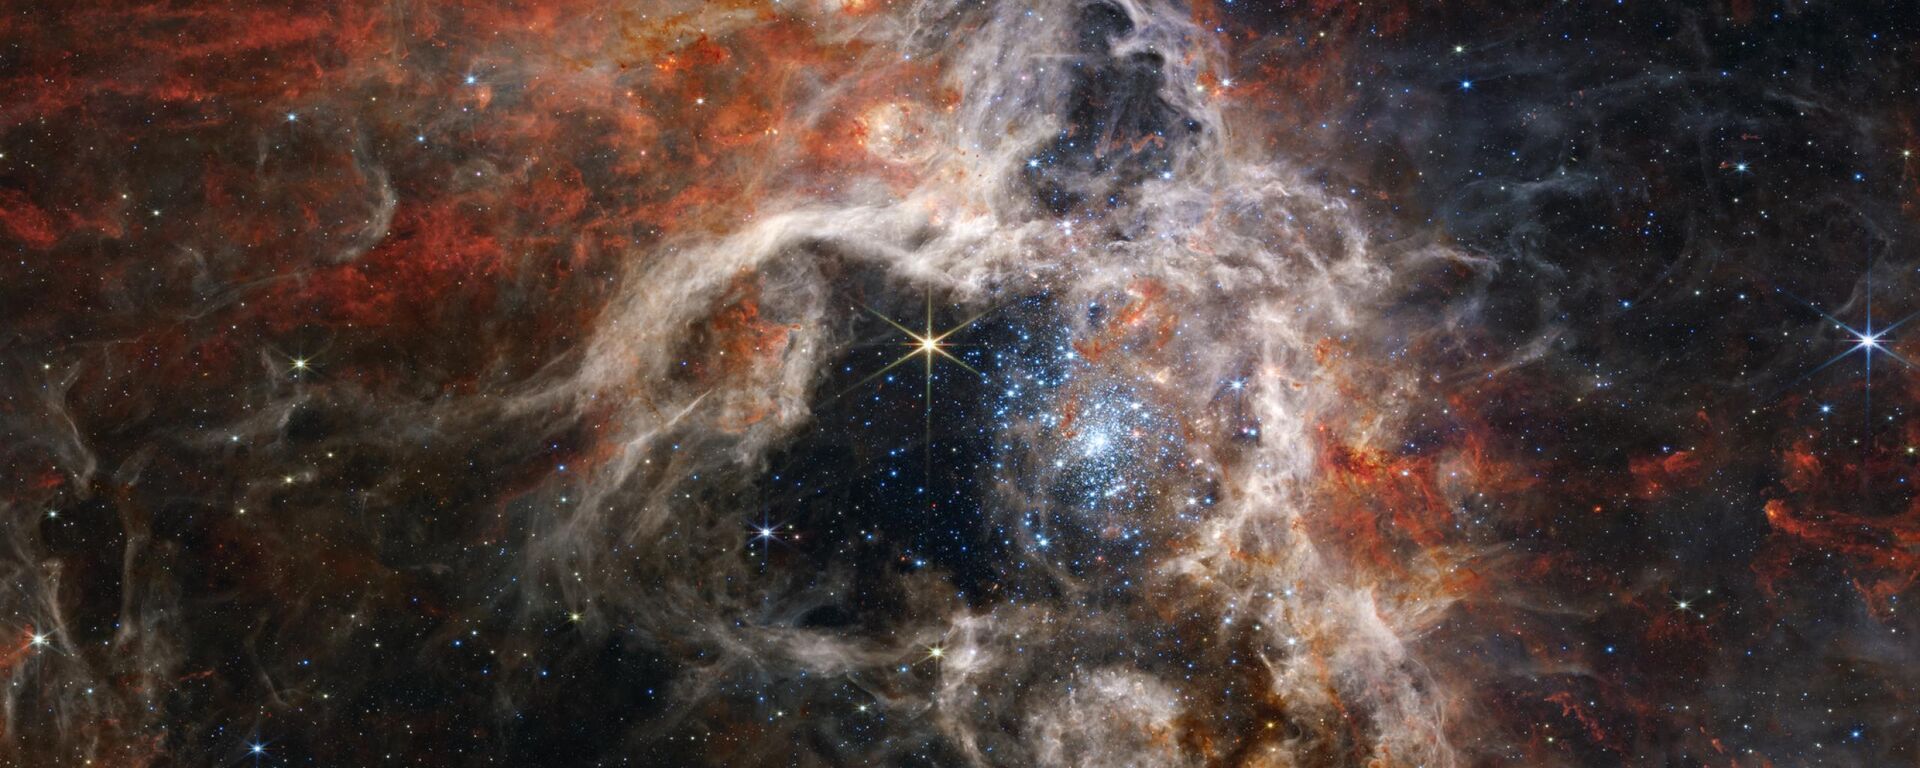 Tarántula cósmica captada por el telescopio James Webb. - Sputnik Mundo, 1920, 06.09.2022